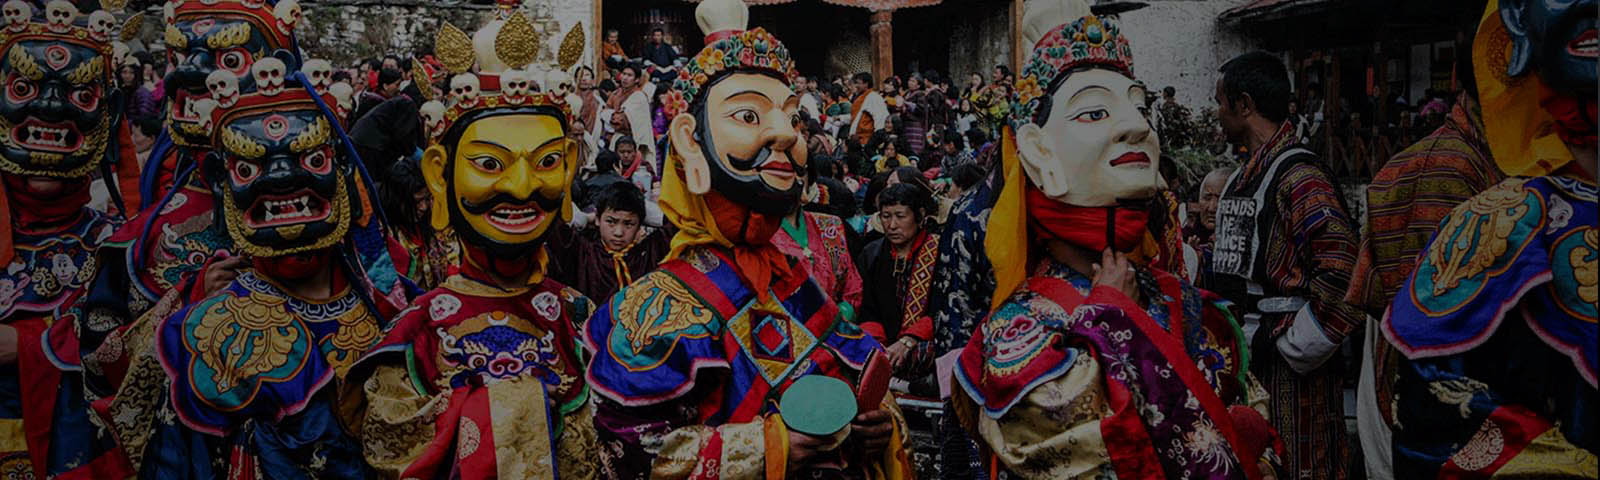 Bumthang Jambay Lhakhang Festival